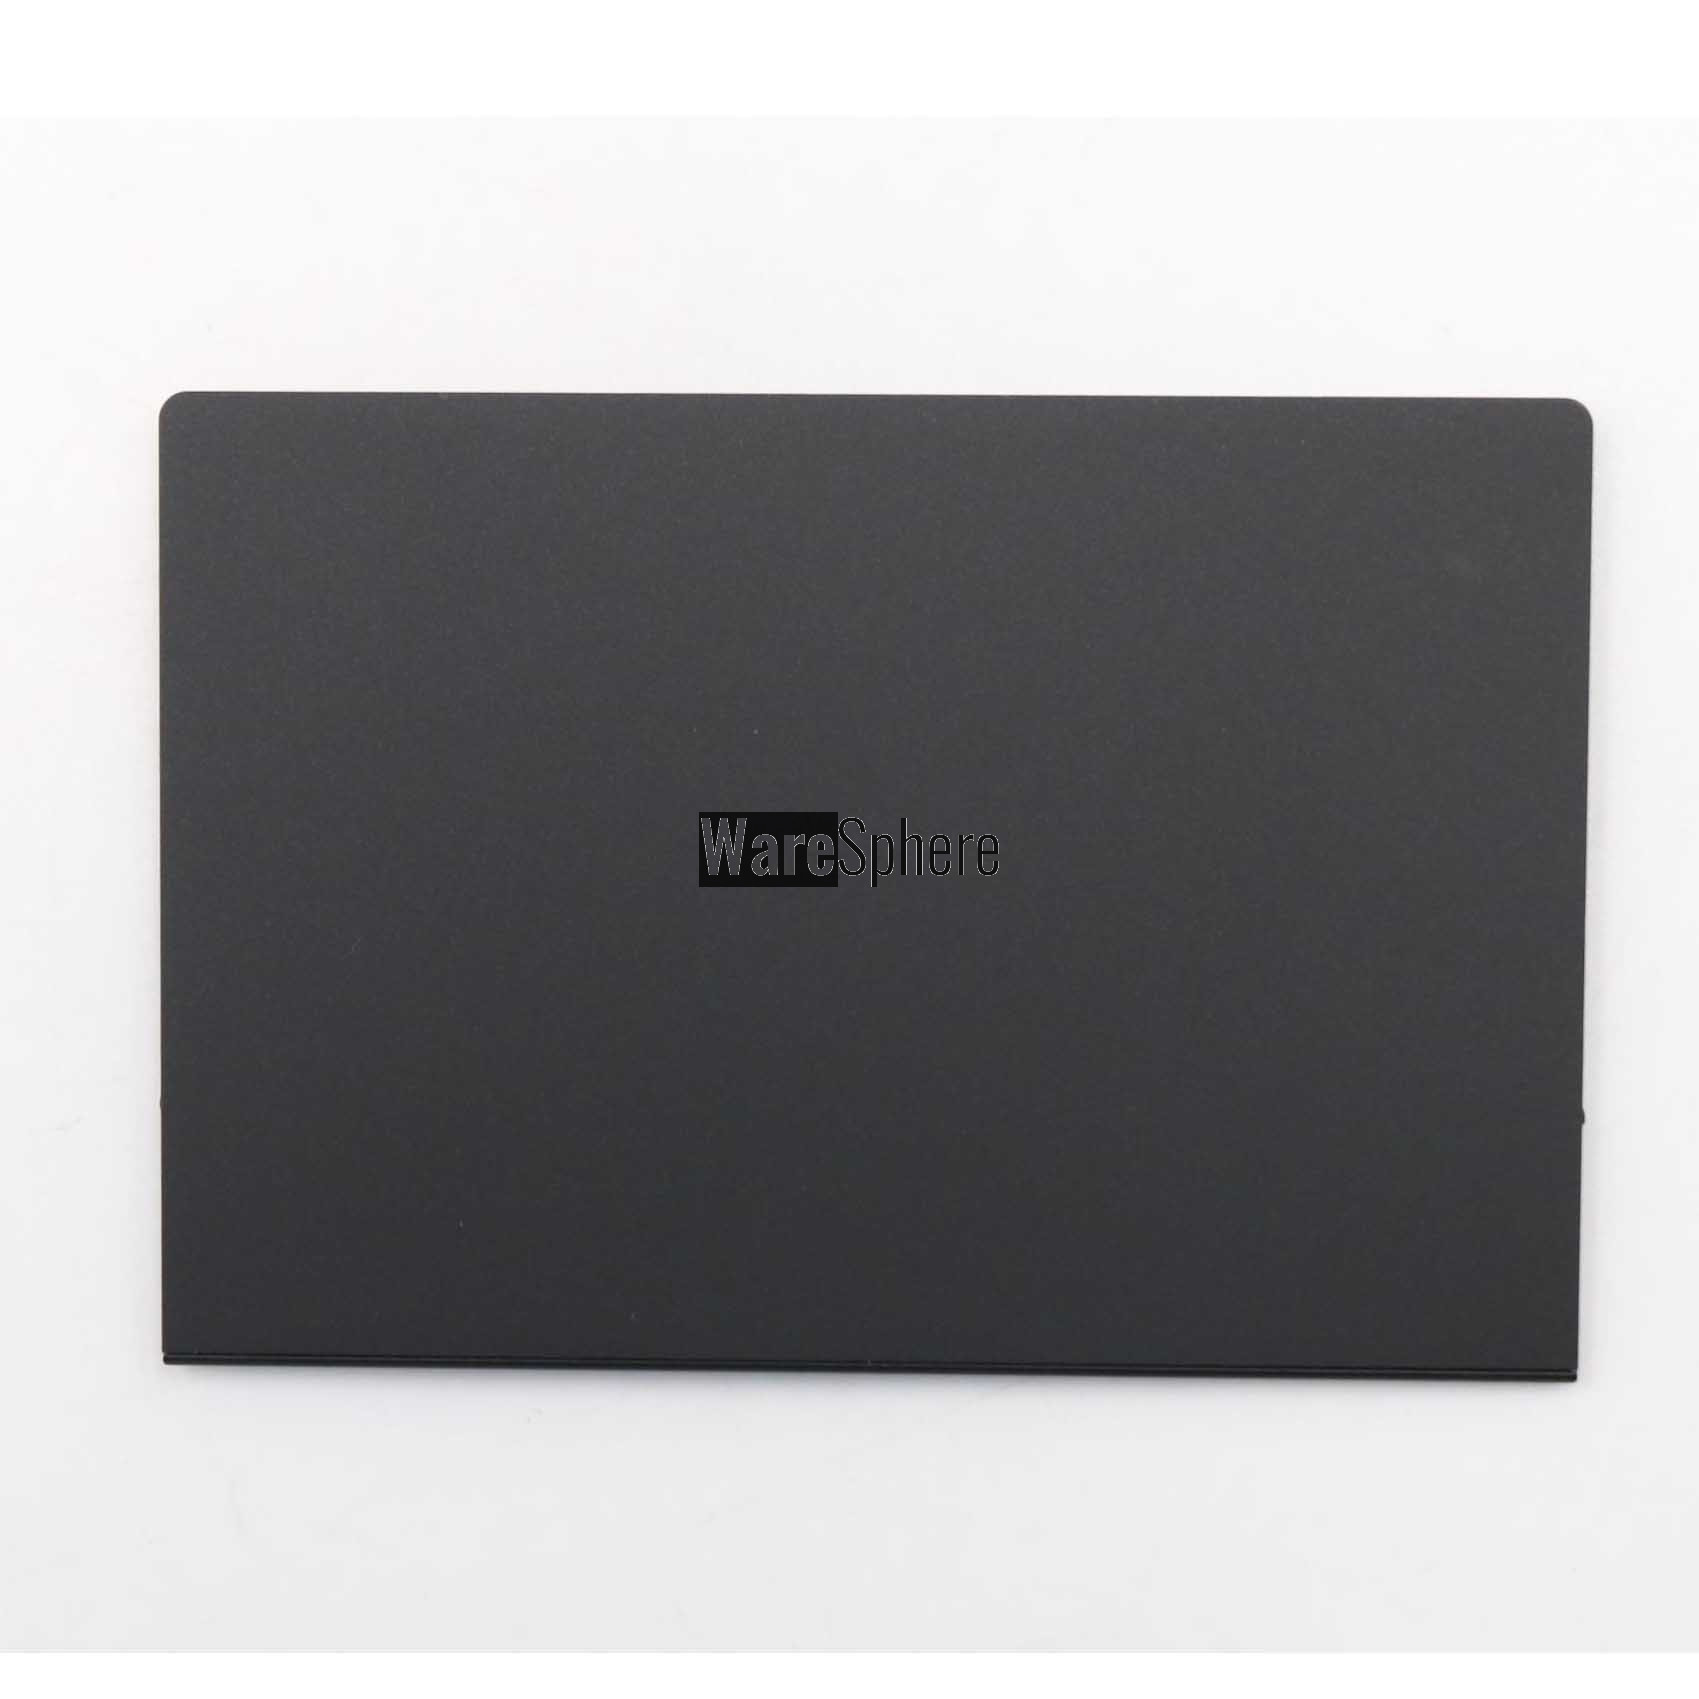 Laptop Touchpad for Lenovo Thinkpad E480 E580 R480 T470 T480 T570 P51S T580 P52S 01LV527 01LV528 01LV529